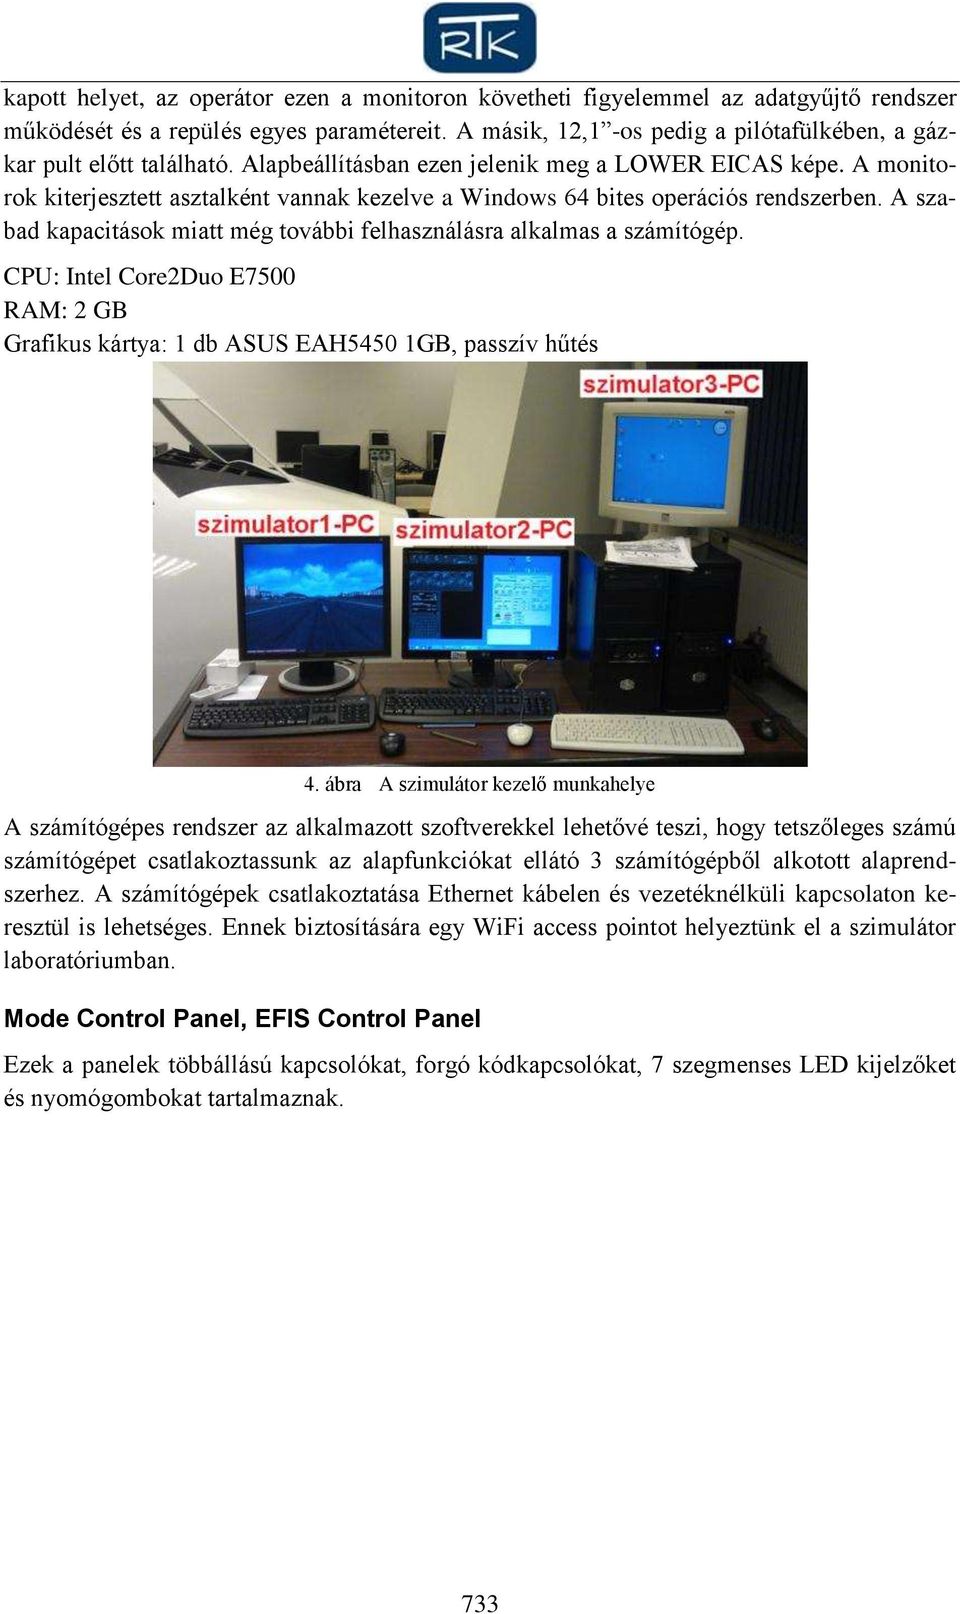 A monitorok kiterjesztett asztalként vannak kezelve a Windows 64 bites operációs rendszerben. A szabad kapacitások miatt még további felhasználásra alkalmas a számítógép.